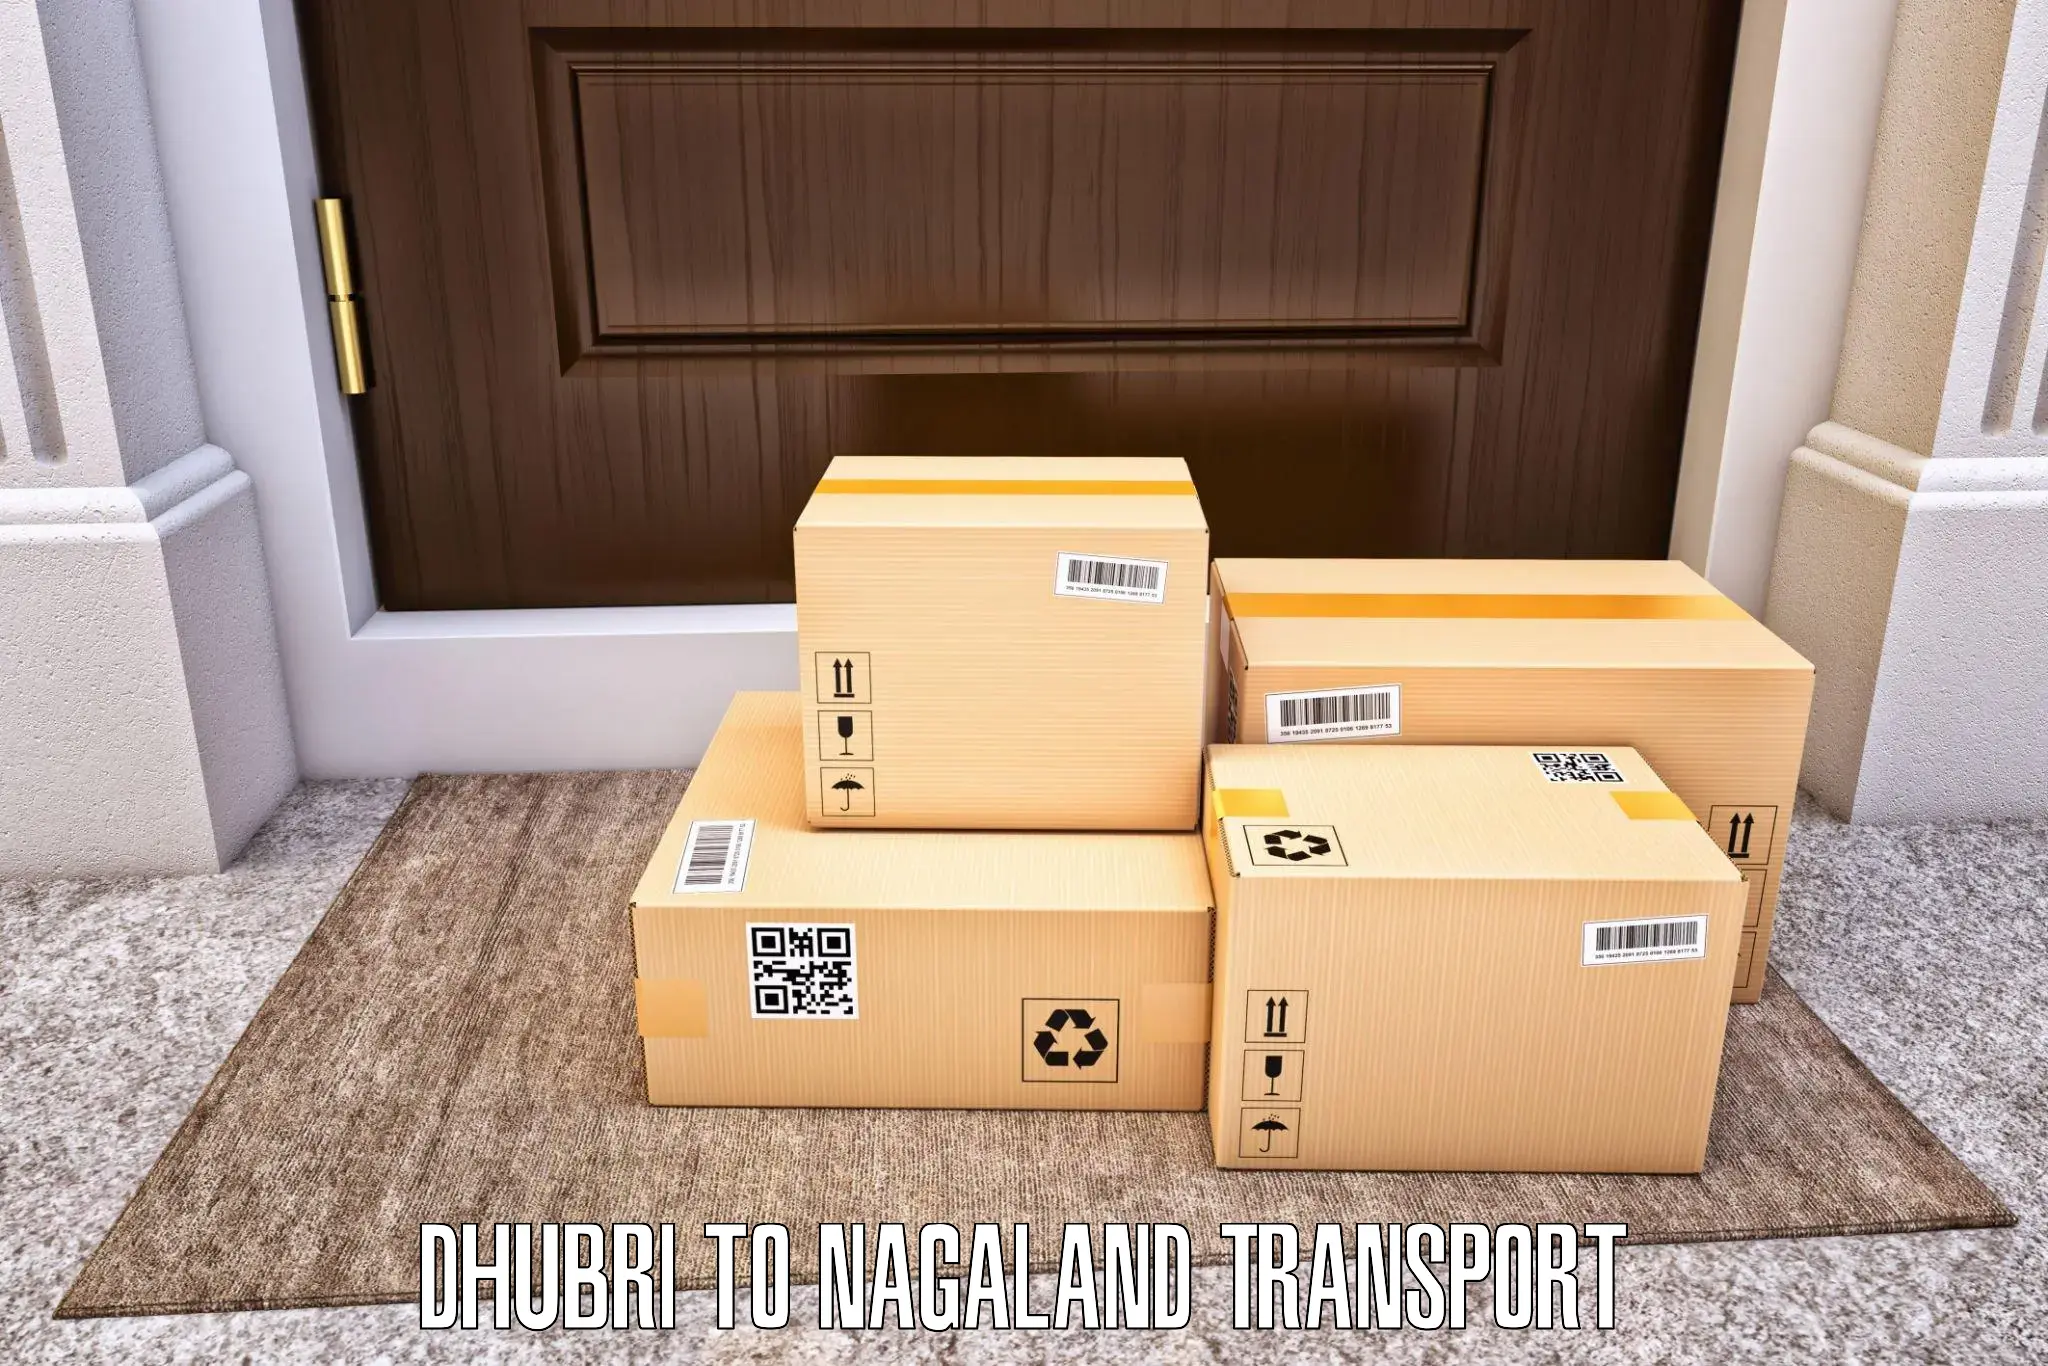 Road transport online services Dhubri to Longleng